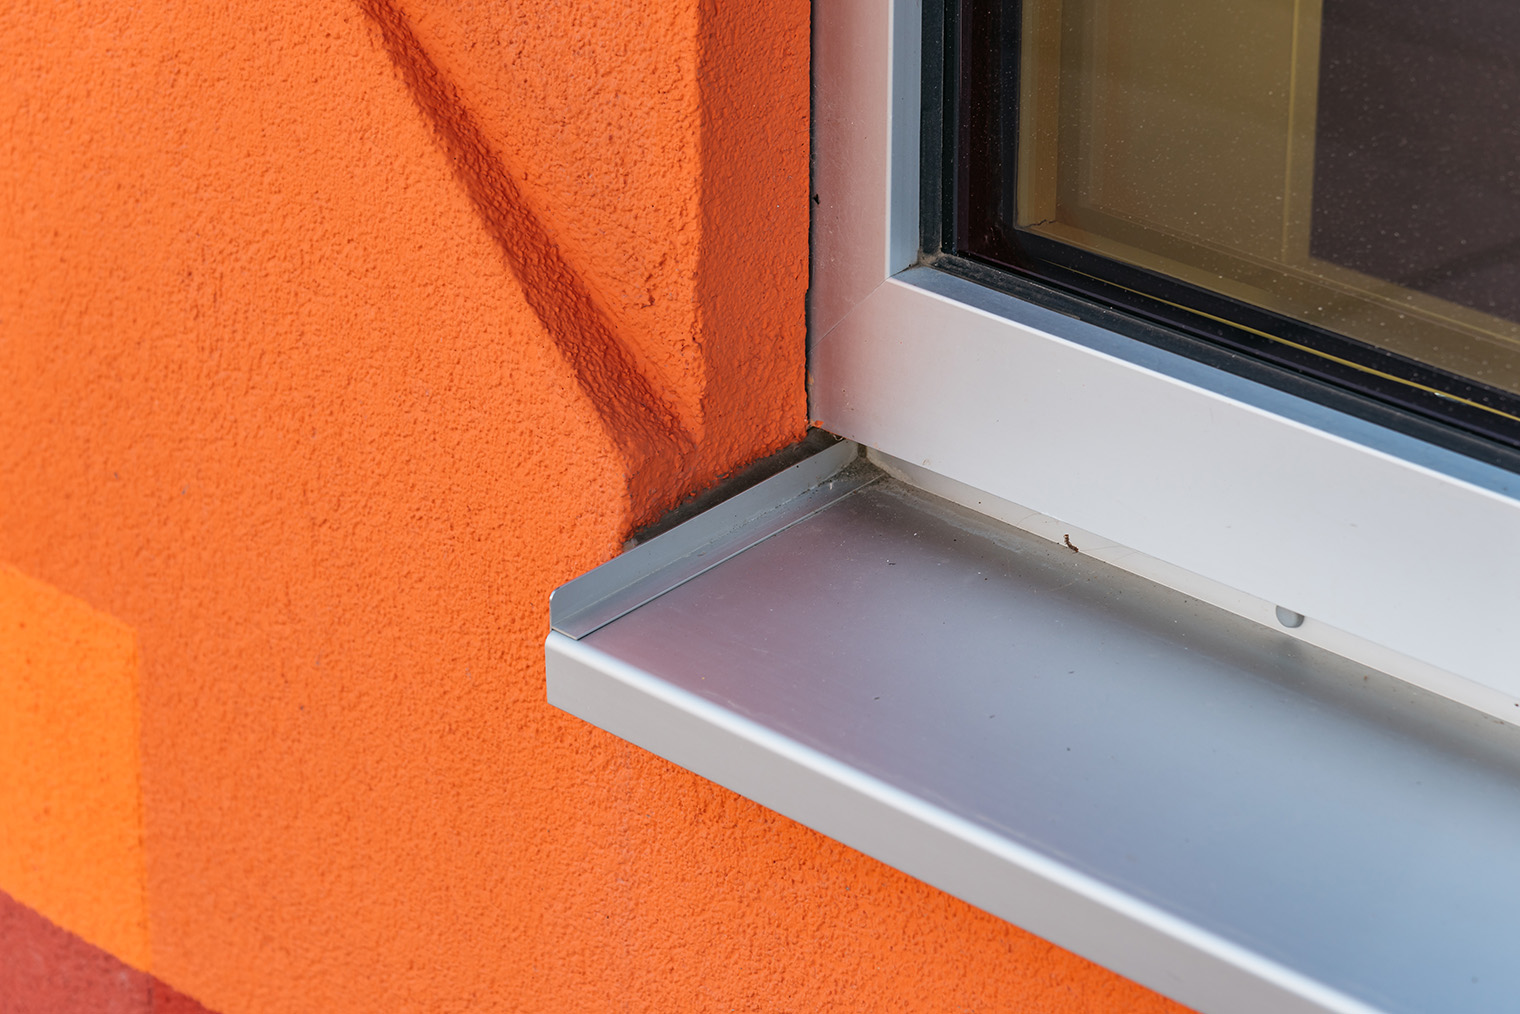 Снаружи откосы зачастую отделаны так же, как и фасад. В данном случае — оштукатурены. Под окном устанавливают металлическую водоотливную планку. Фотография: JJFarq / Shutterstock